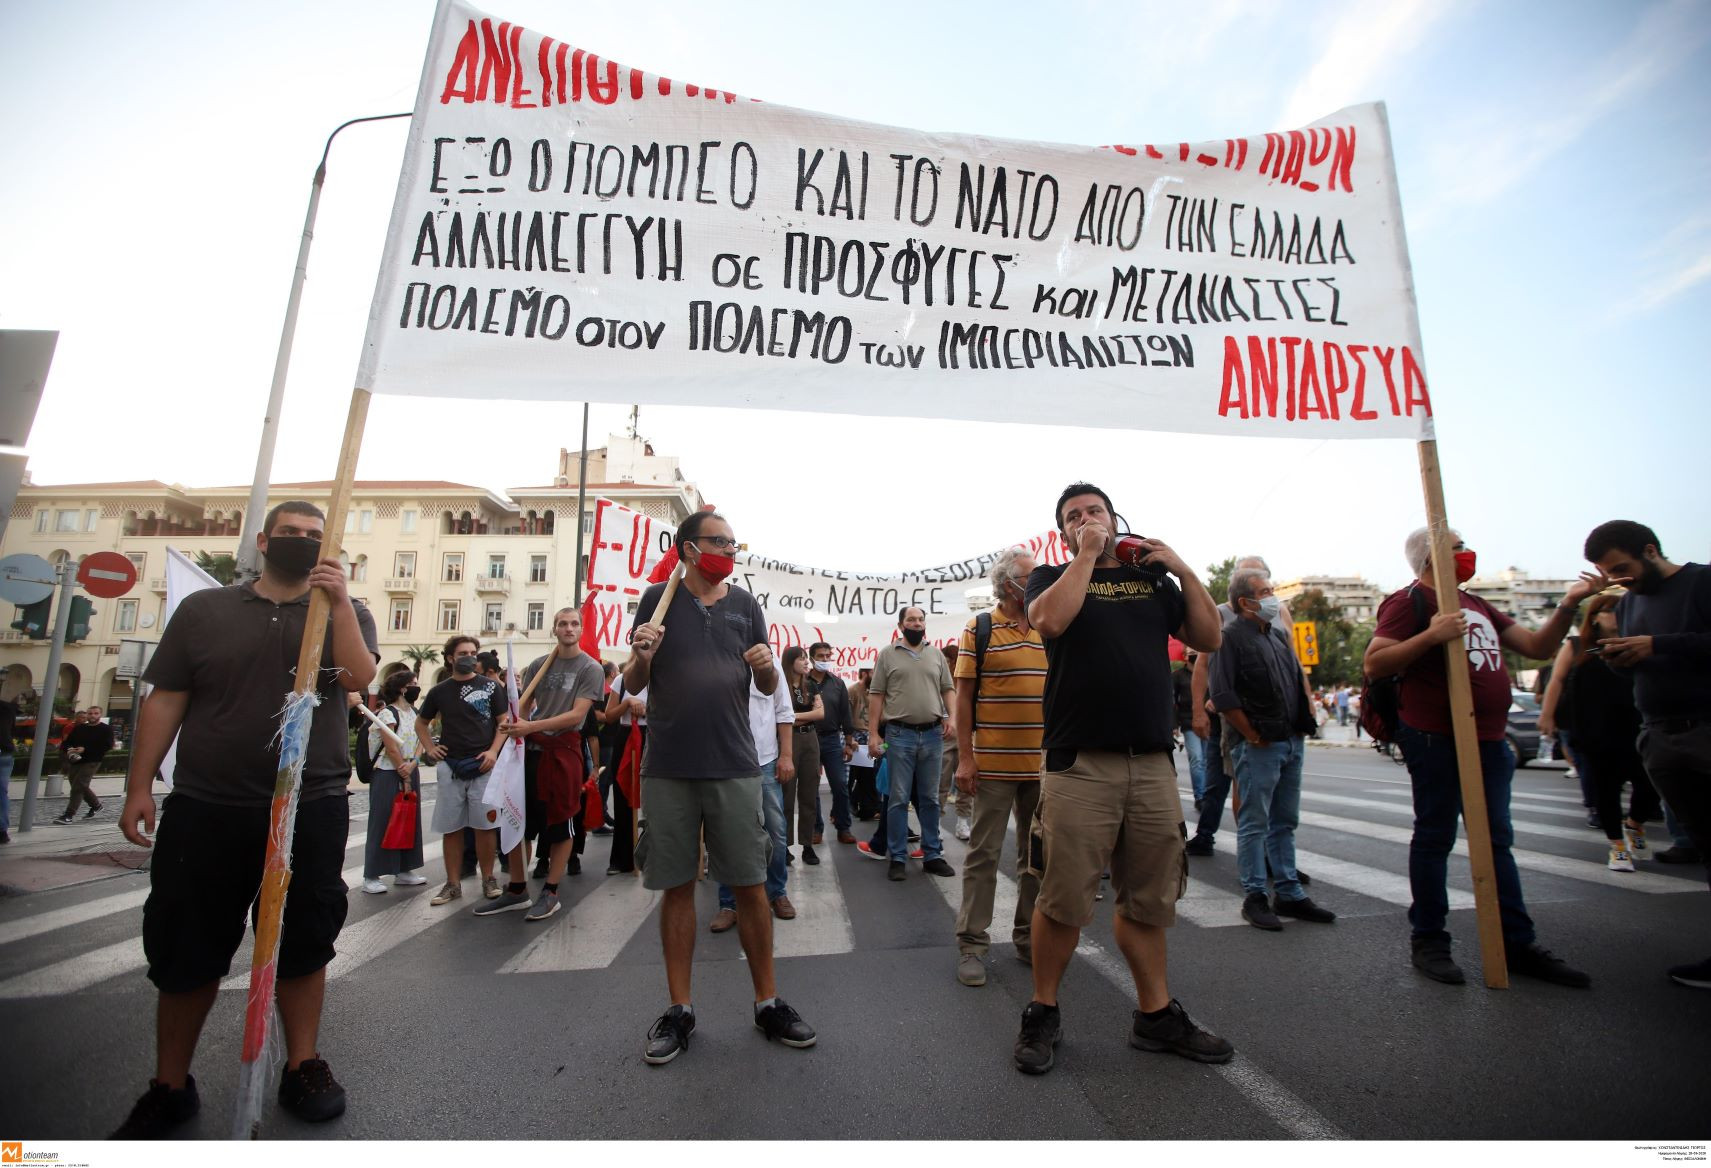 Πορείες διαμαρτυρίας ενάντια στην επίσκεψη Πομπέο